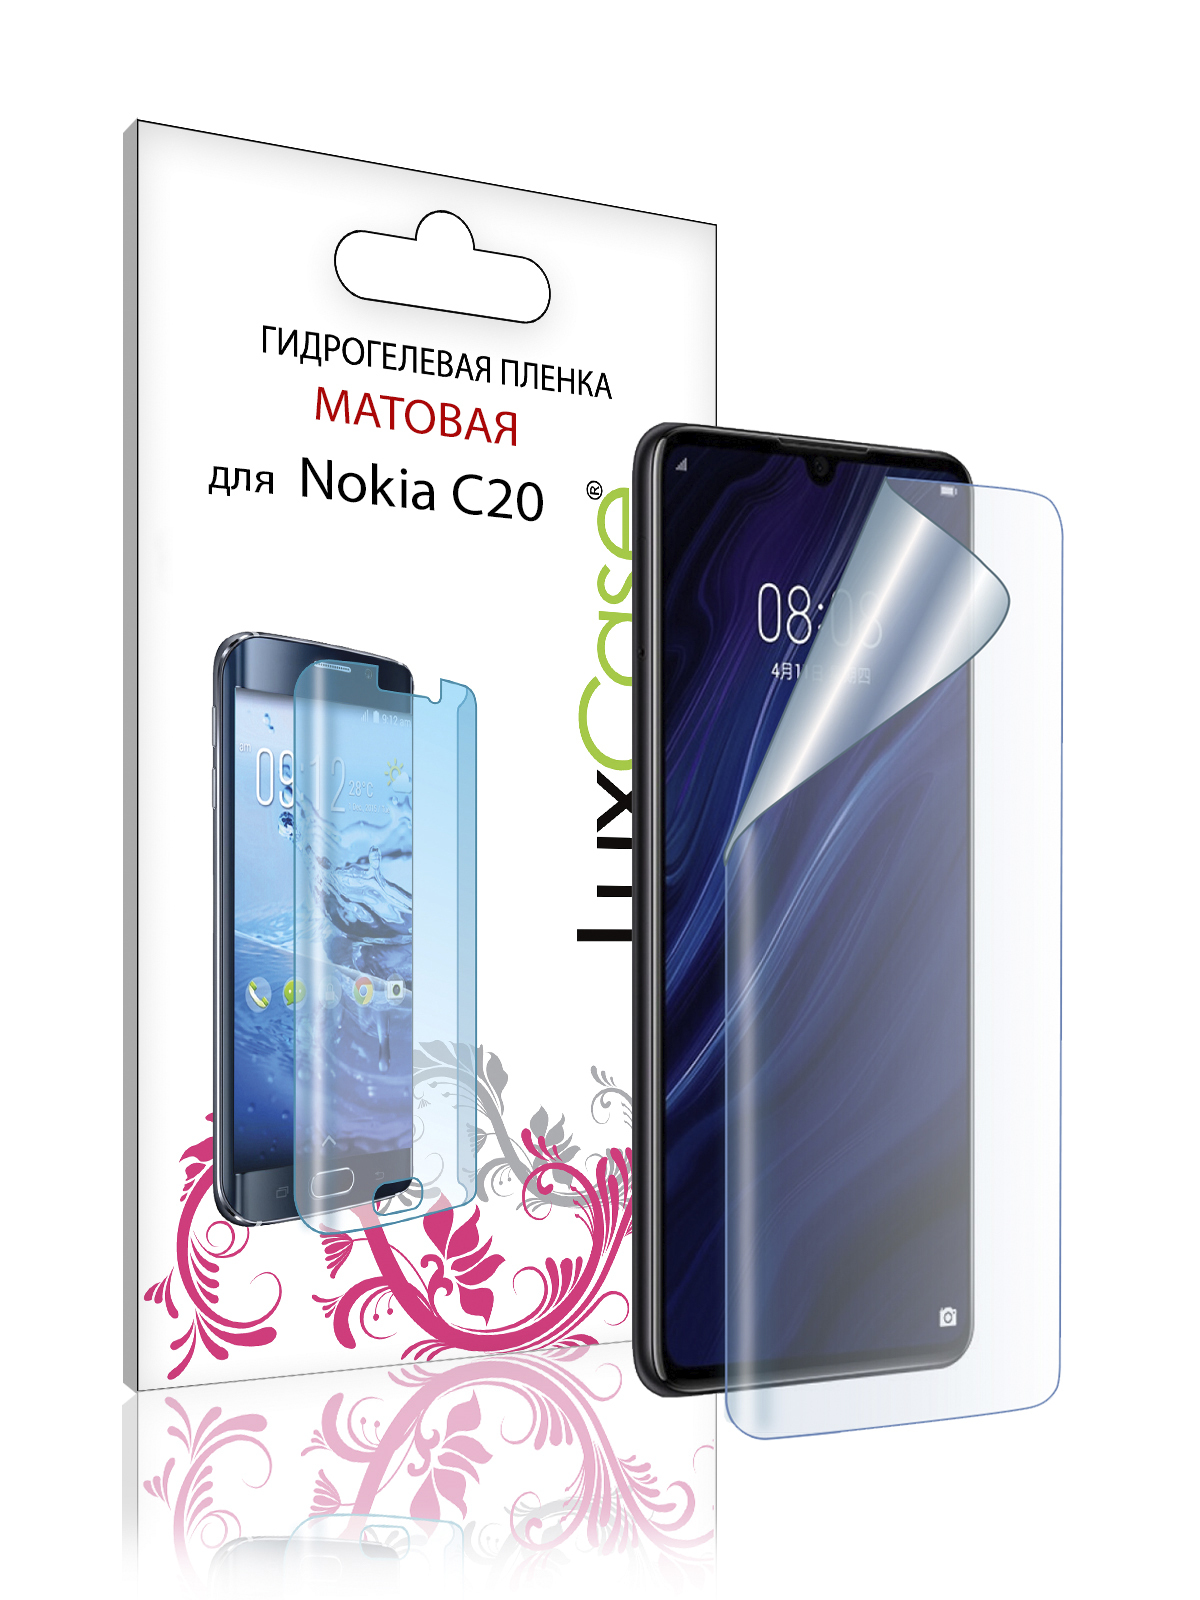 Пленка гидрогелевая LuxCase для Nokia C20 0.14mm Front Matte 86450 гидрогелевая защитная плёнка для nokia c20 матовая не стекло на дисплей для телефона